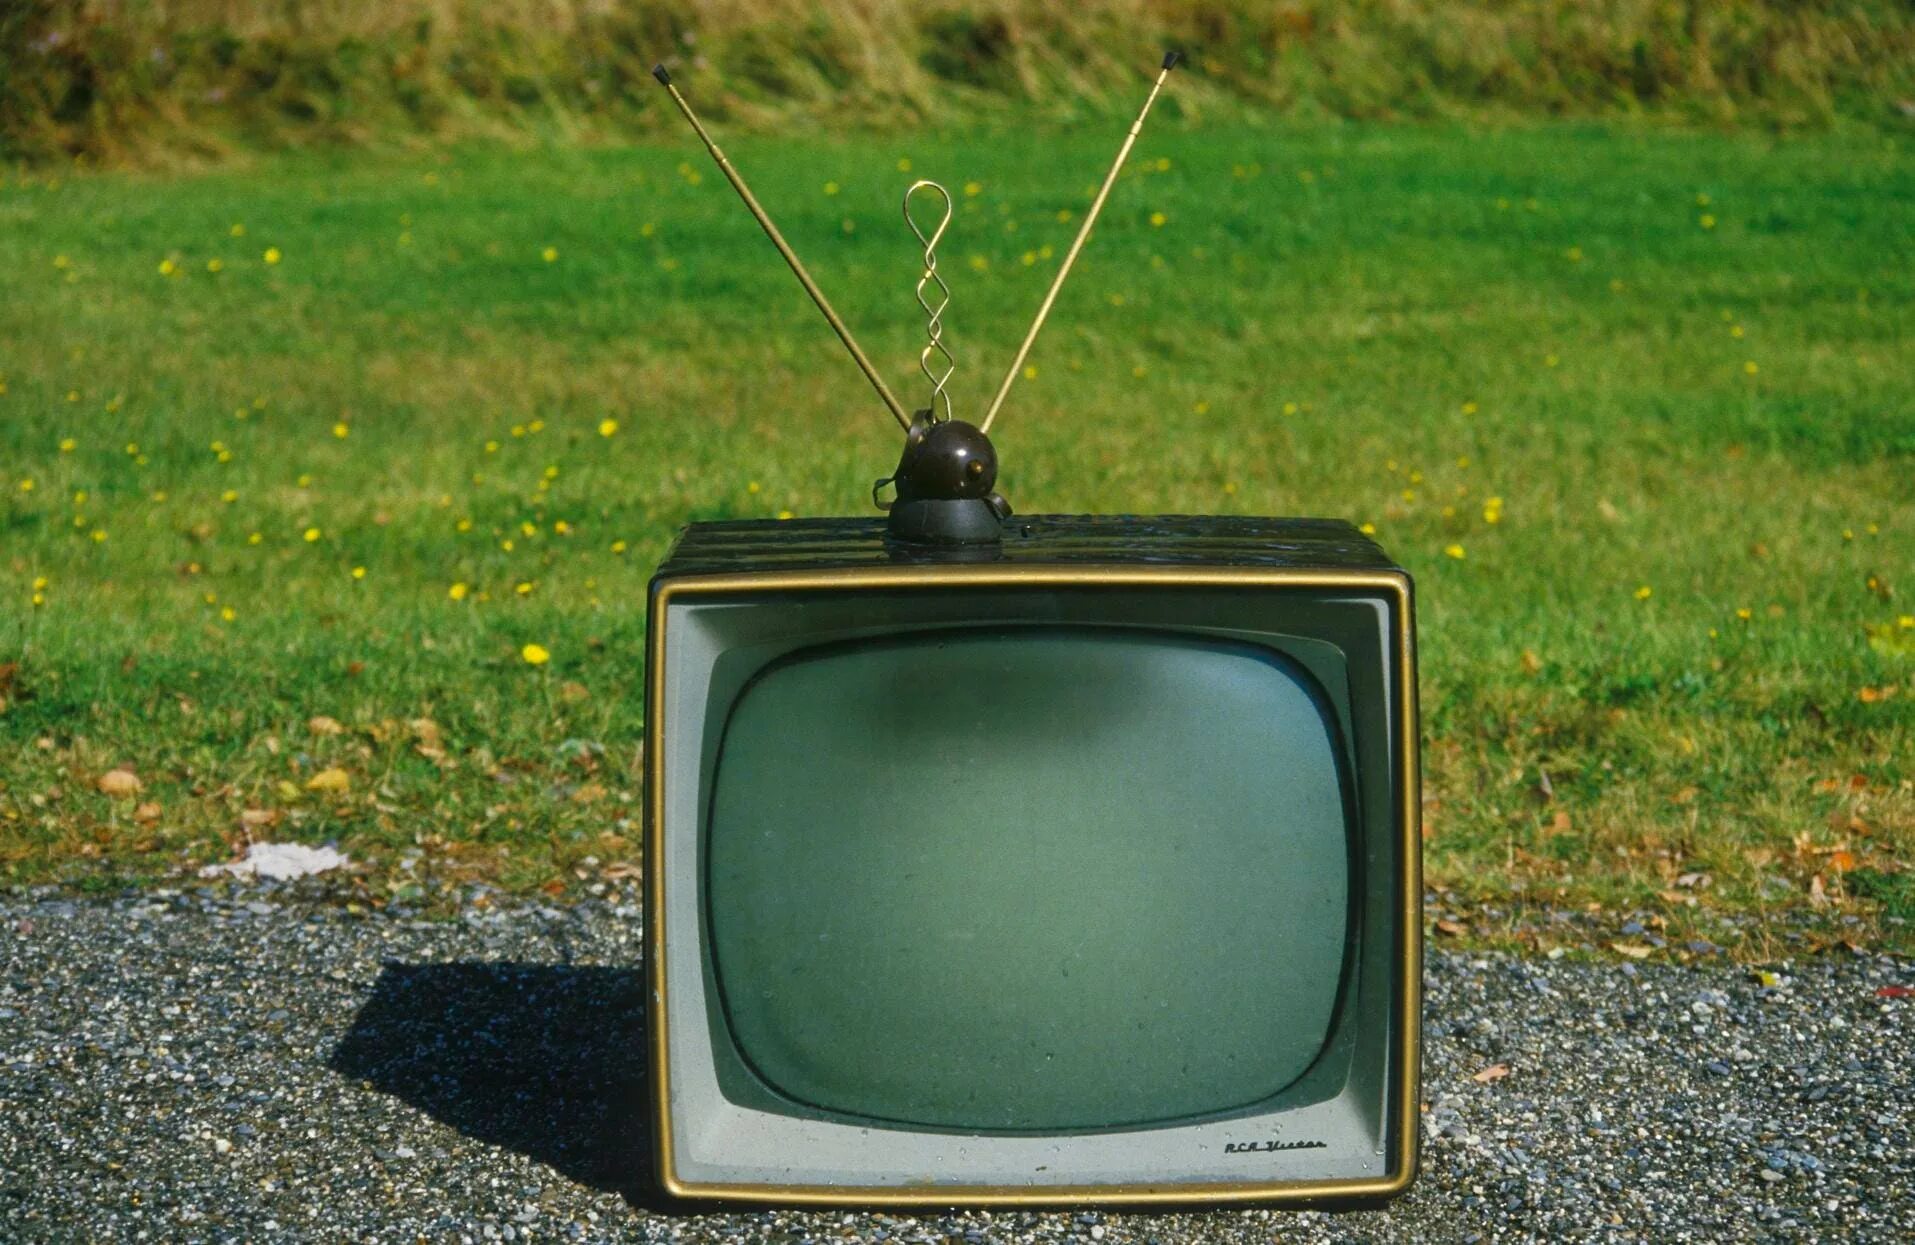 Старый телевизор. Телевизор с антенной. Старый телевизор с антенной. Ретро телевизор. Old tv shows